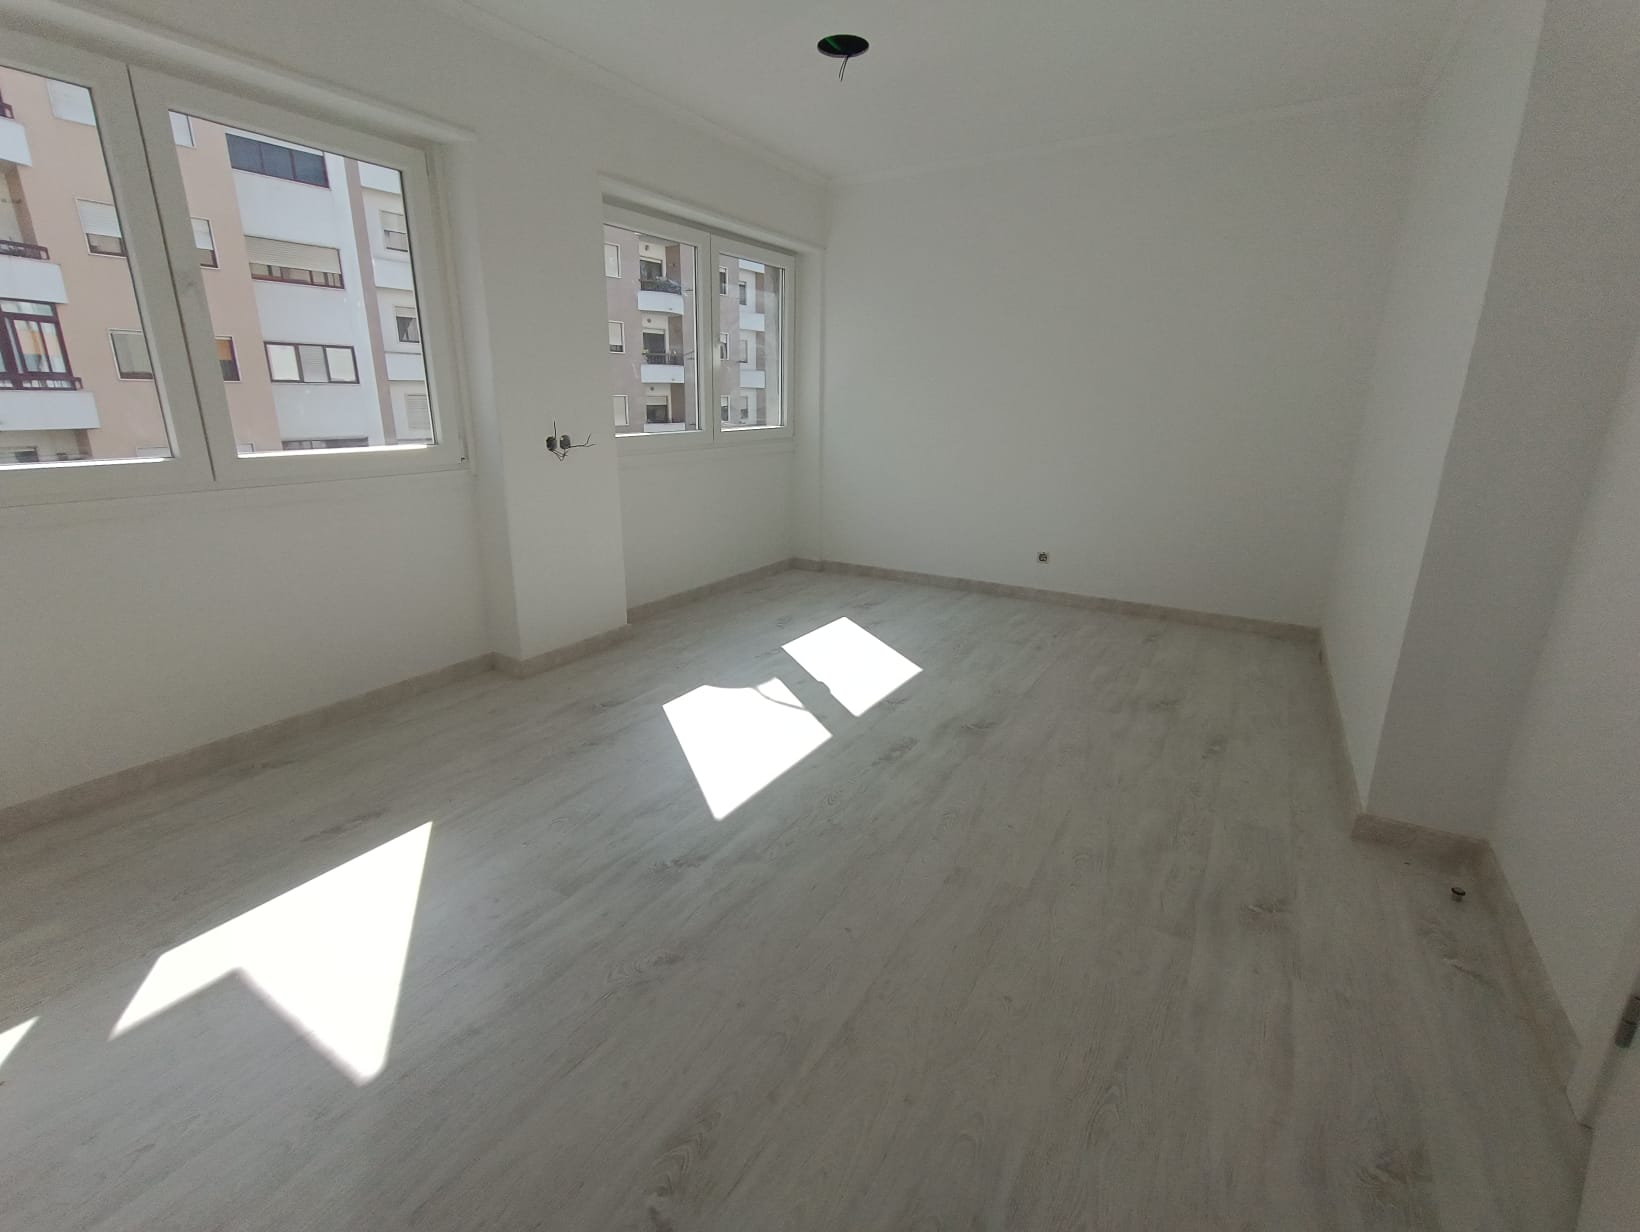 Refurbished Apartment in Centro (Agualva) – 82 m²